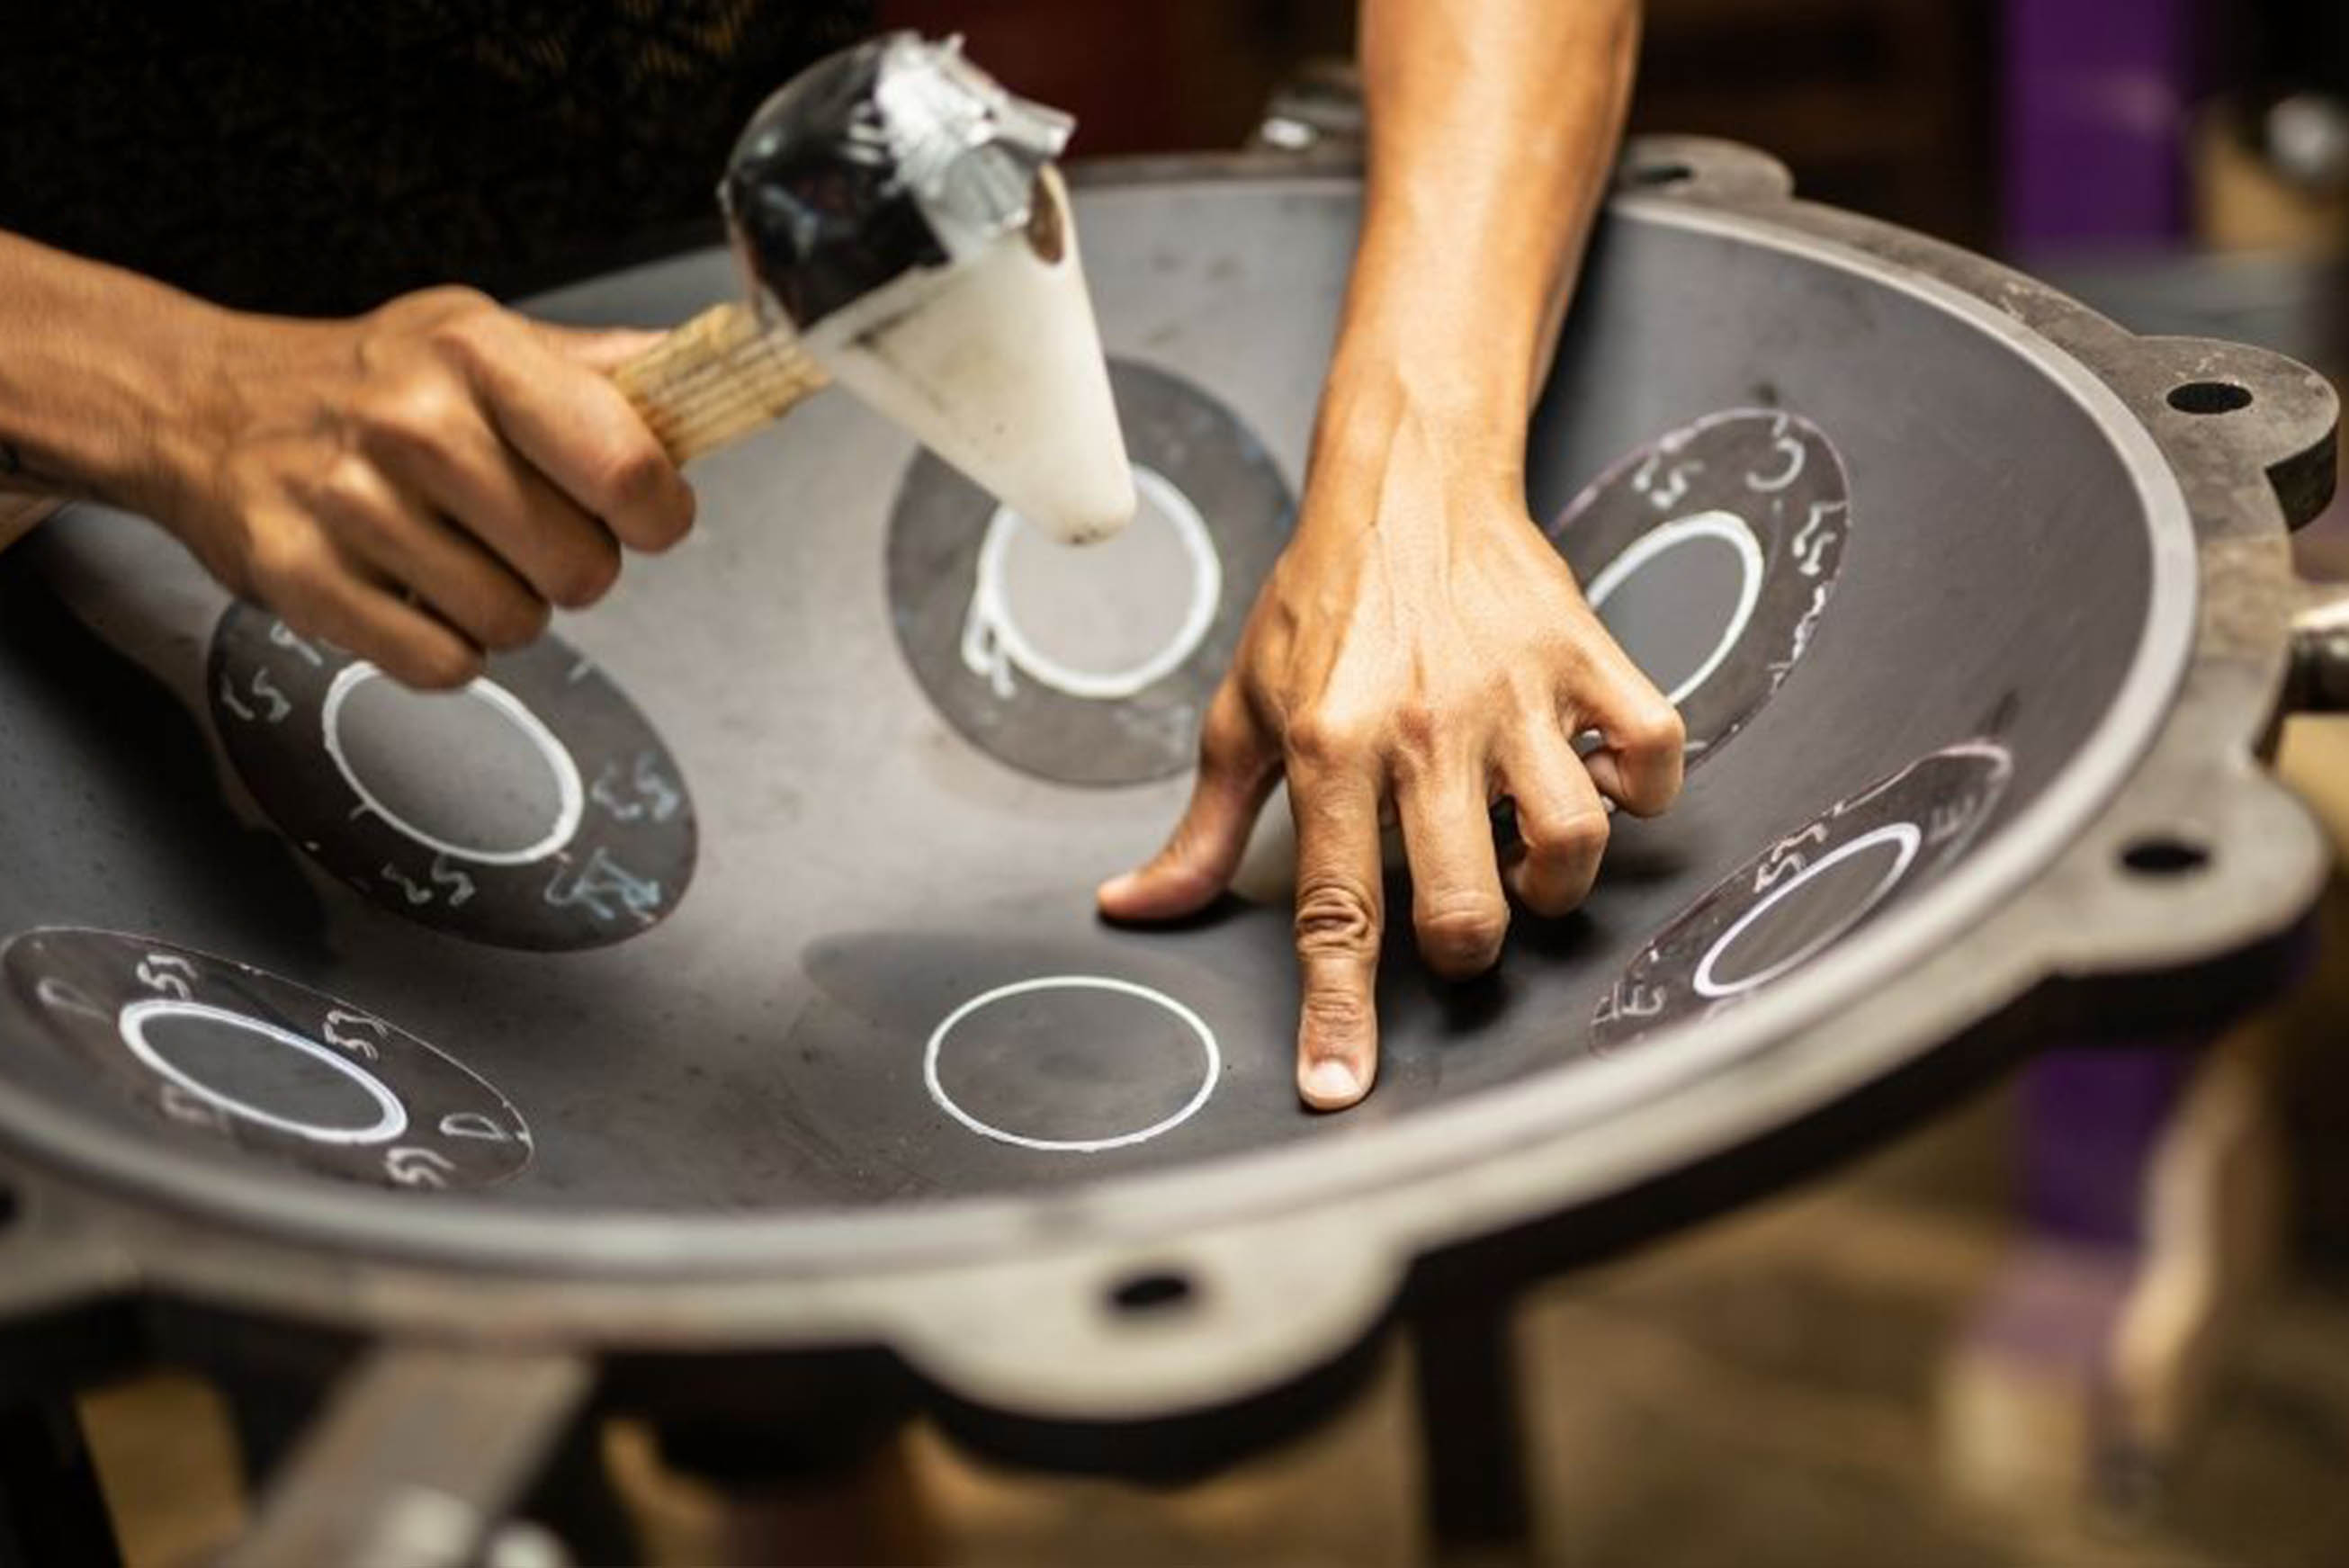 fabrication handpan, comment fabriquer un hang drum, handpan instrument fabricant